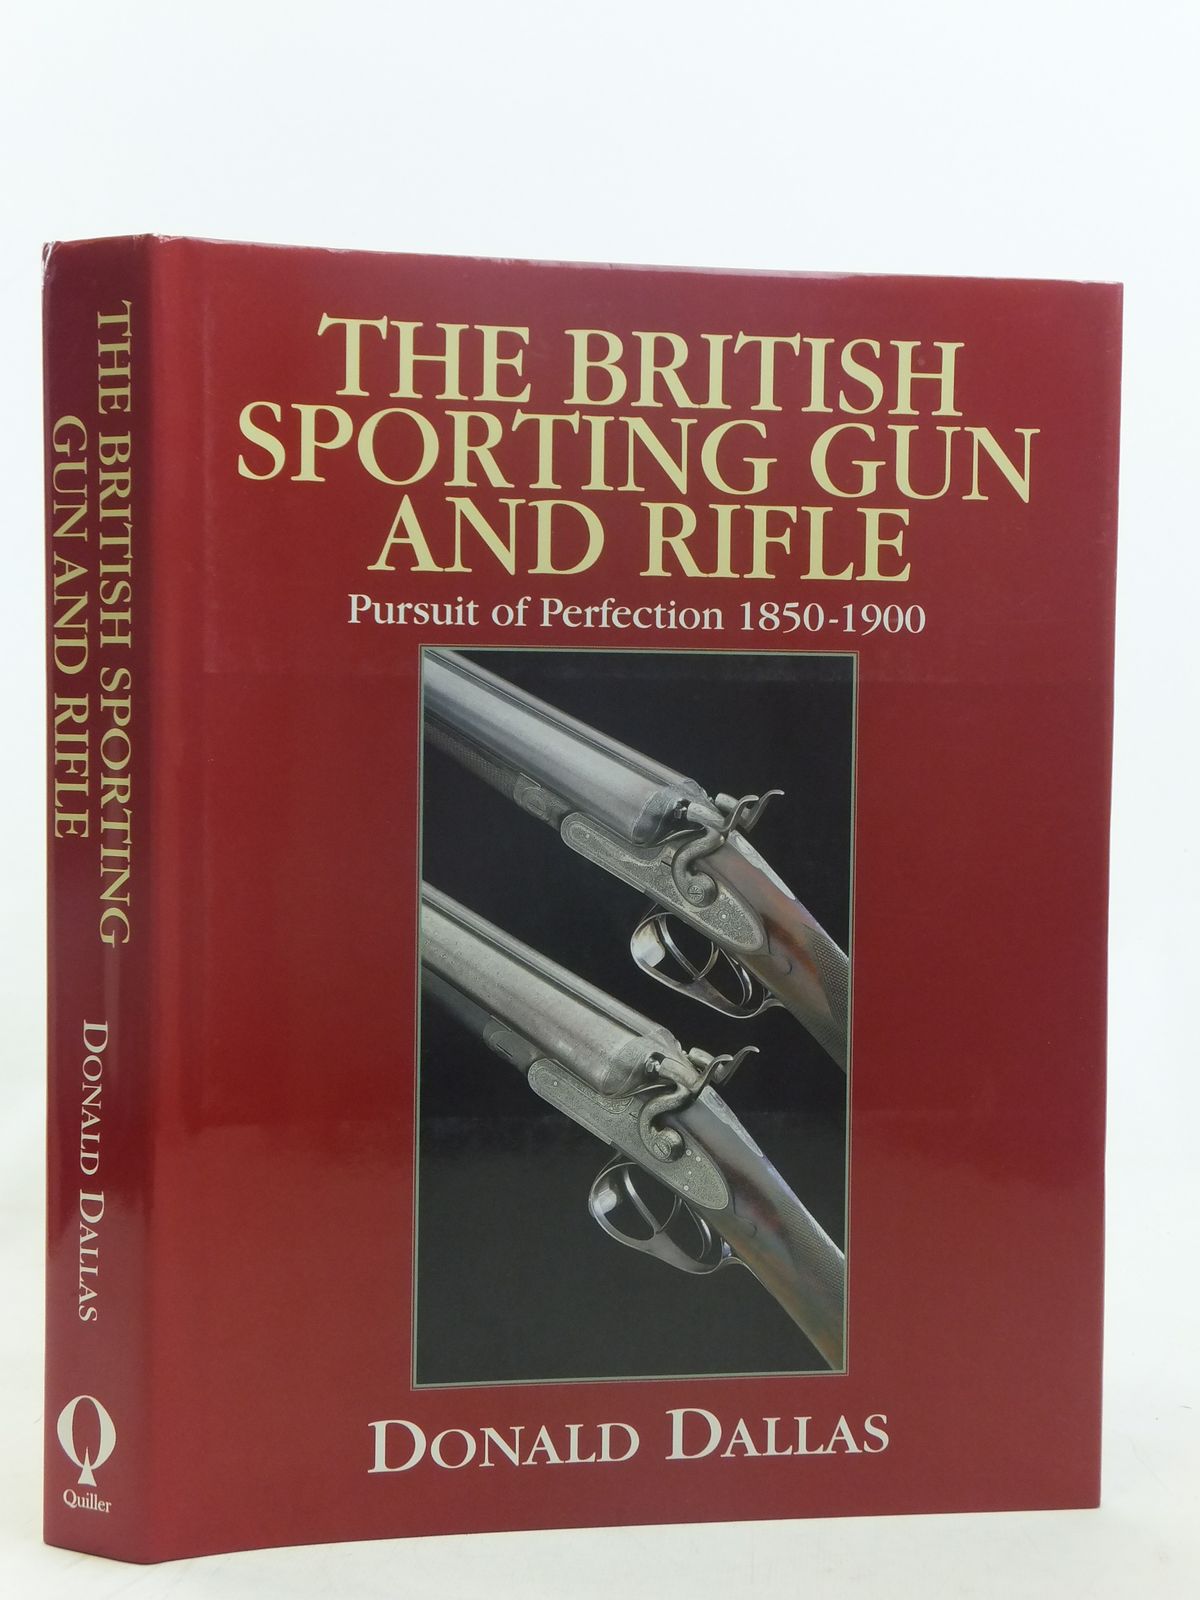 The British Sporting Gun And Rifle